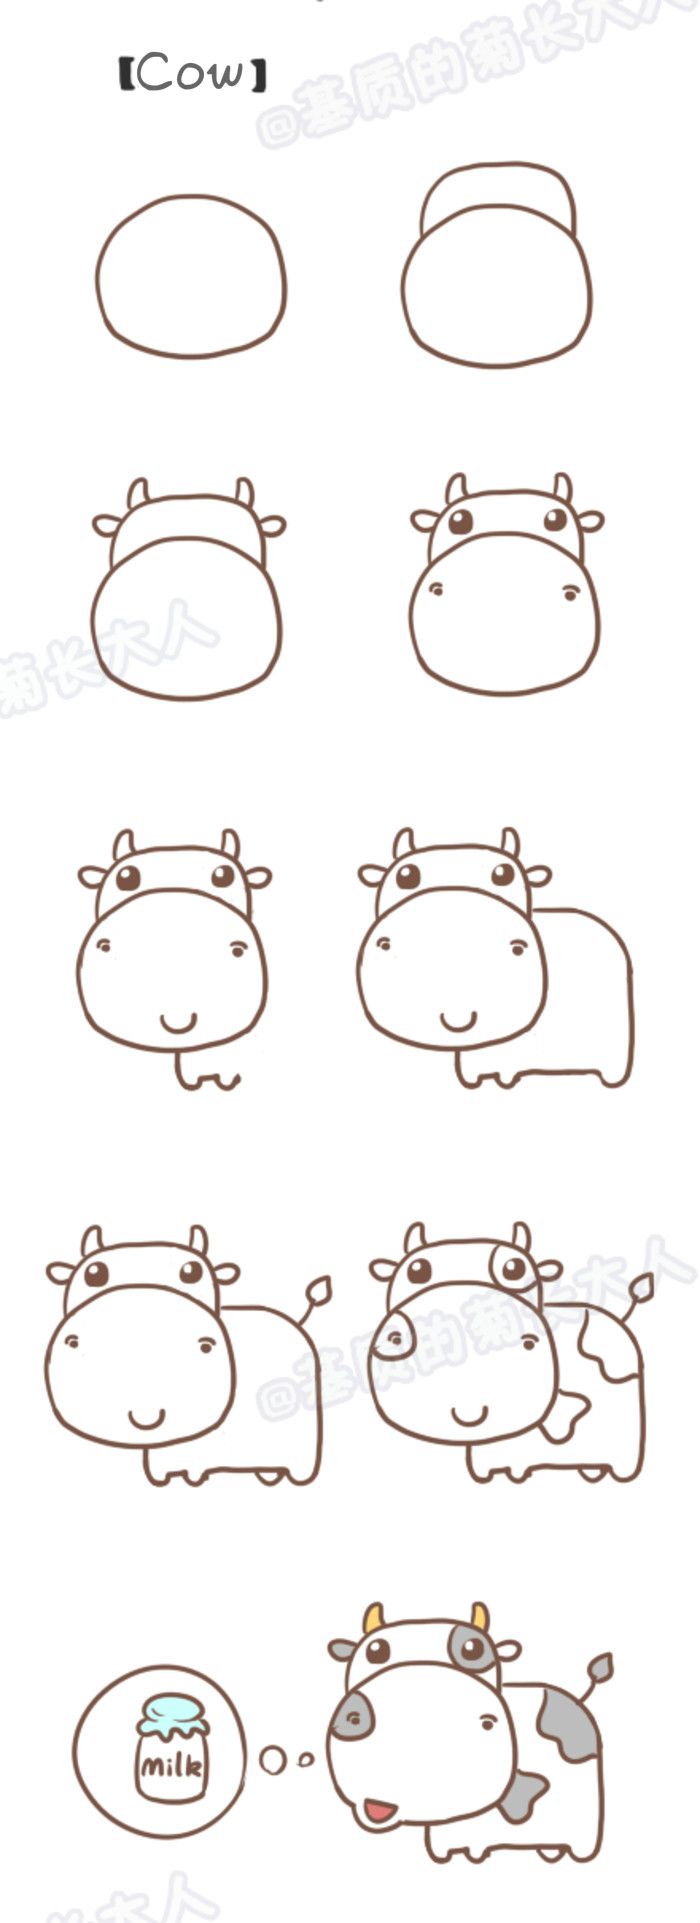 Step By Step Drawing : Learn To Draw A Cow / Dessins Étapes Par Étapes : Apprendre À Dessiner Une Vache